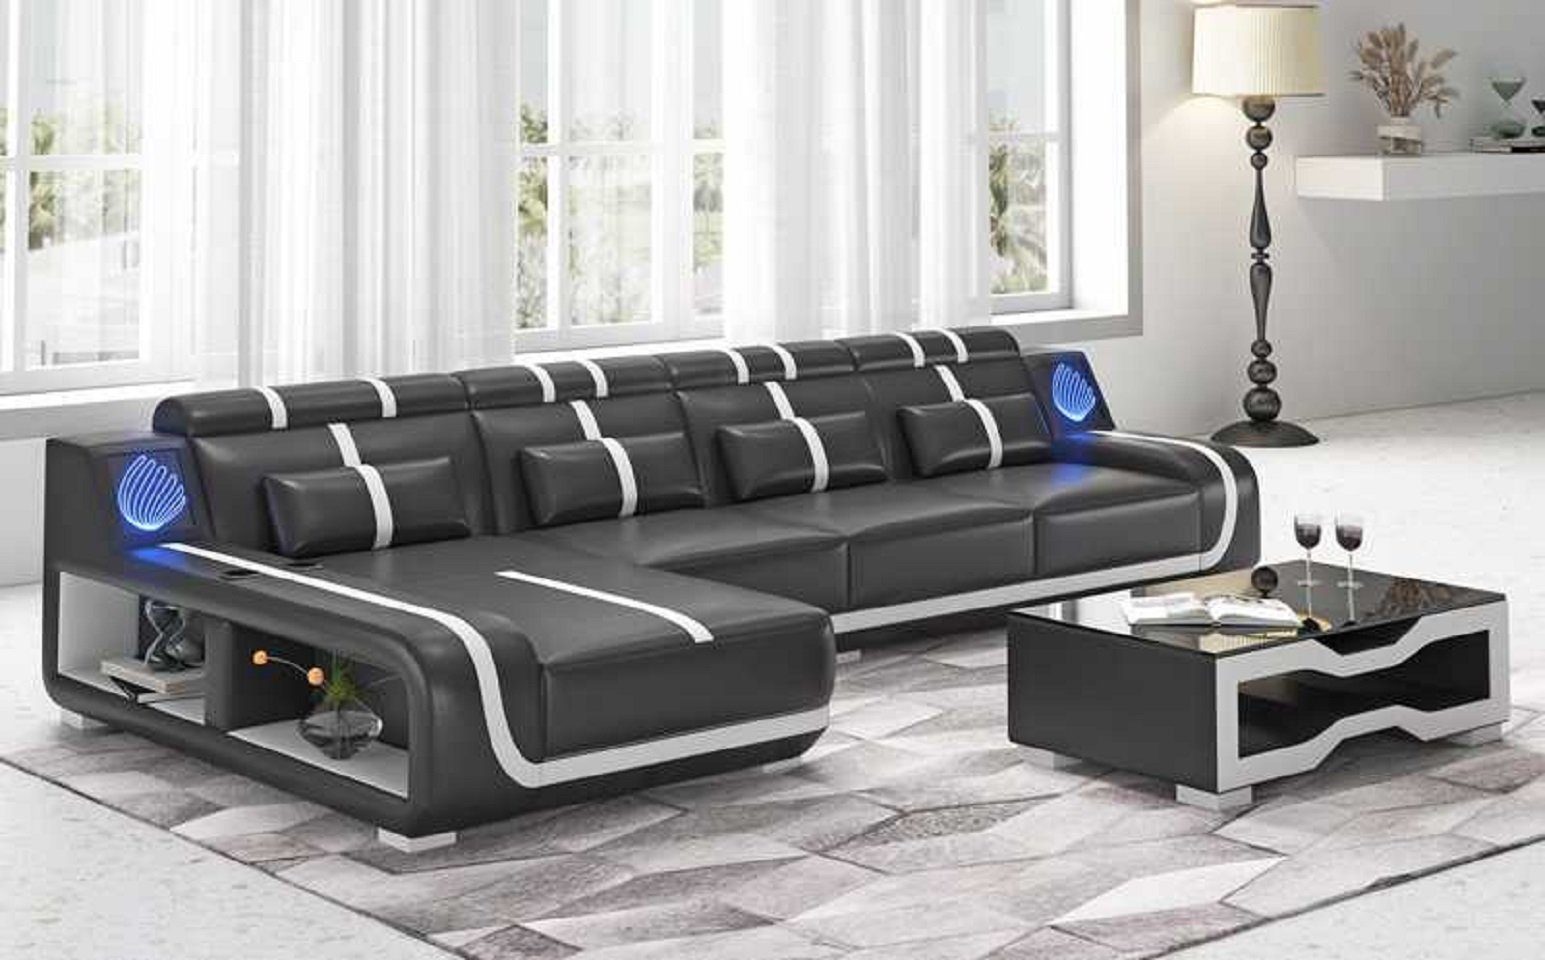 Made Design Teile, Europe L JVmoebel 3 Sofa in Form Liege Ecksofa Ecksofa couchen, Modern Couch Schwarz